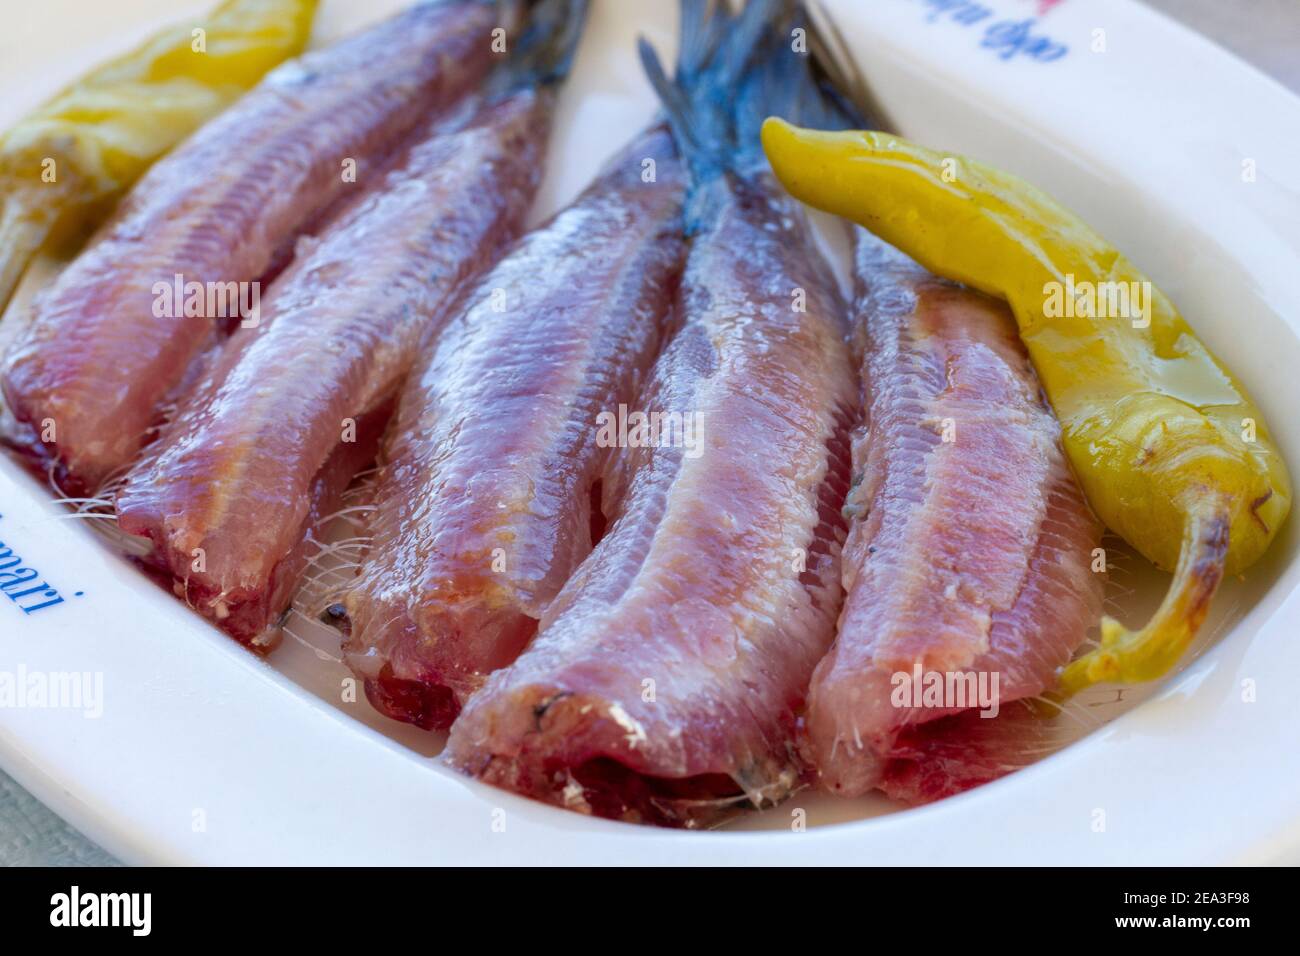 Gesalzene Sardinen, eine beliebte Fischfeinheit von Kalloni, Insel Lesvos, Griechenland, die als EU-Produkt mit geschützter Ursprungsbezeichnung anerkannt ist. Stockfoto